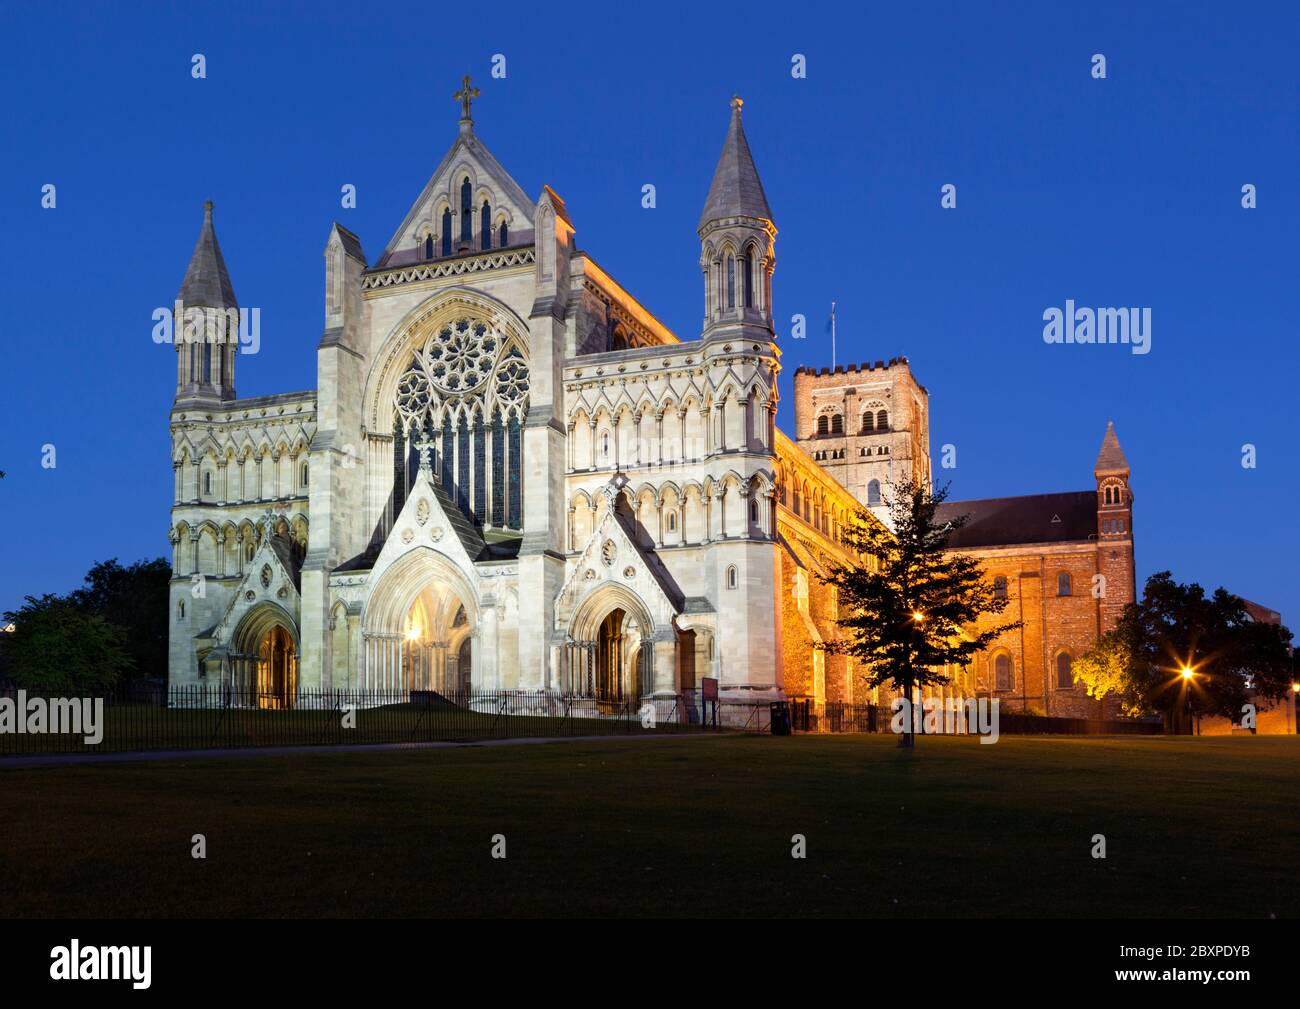 Cathédrale et abbaye Église de Saint Alban (premier martyr chrétien de Grande-Bretagne) la nuit, St Albans, Hertfordshire, Angleterre, Royaume-Uni, Europe Banque D'Images